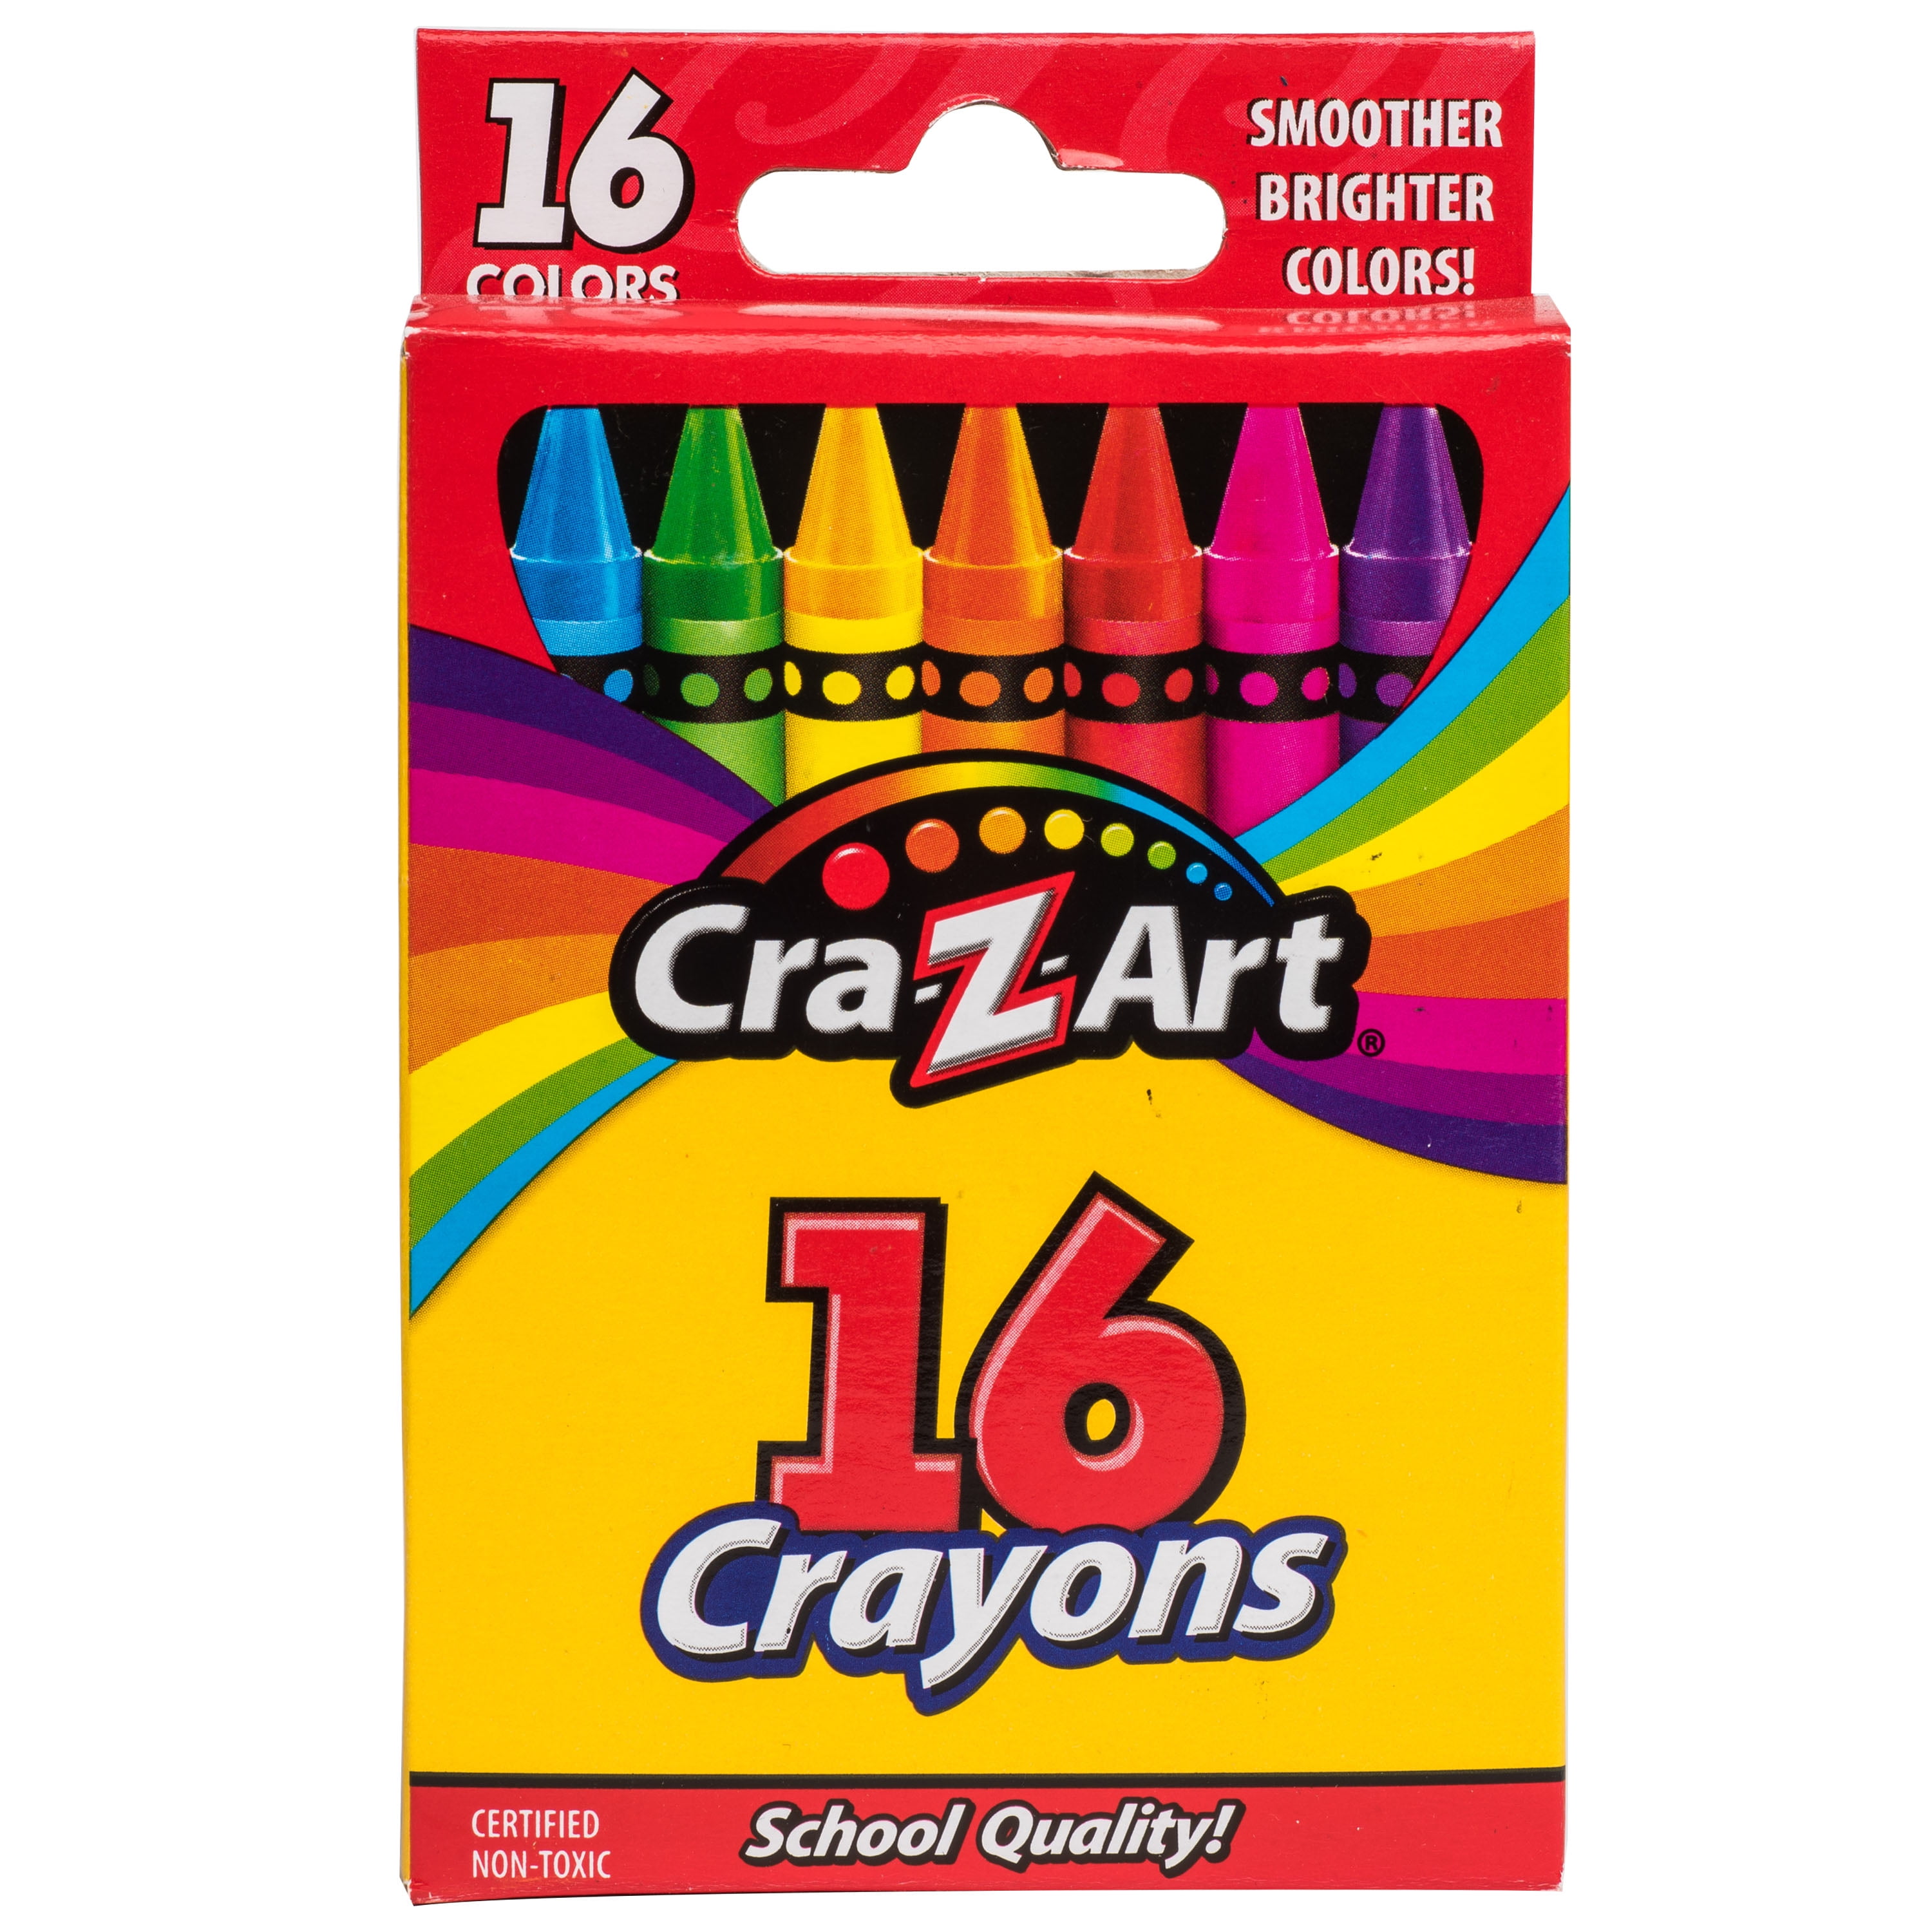 Cra-Z-Art Washable Jumbo Crayons, 16 count